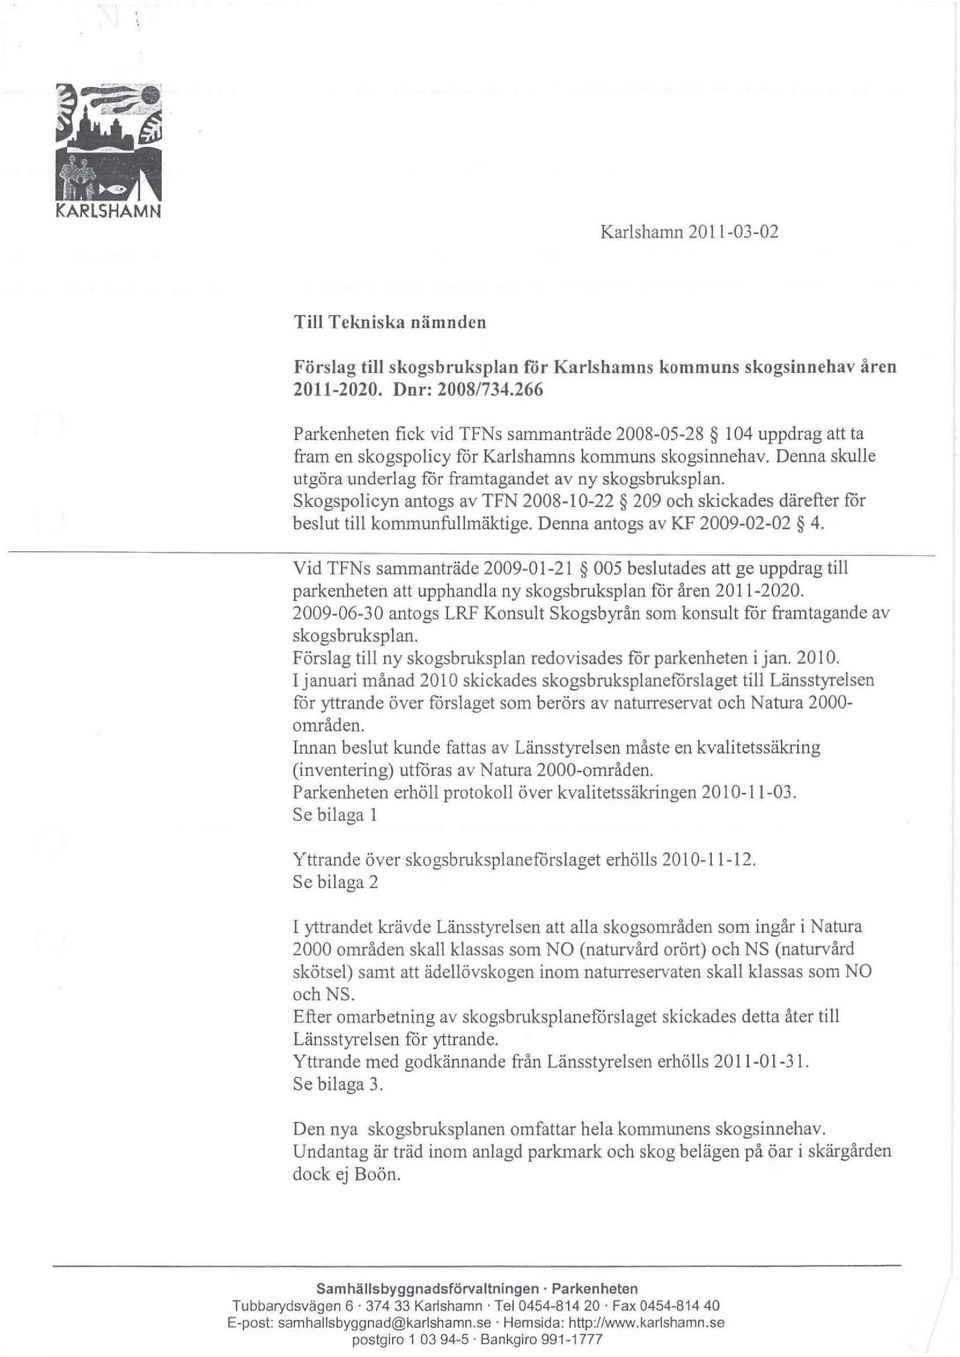 skogspolicyn antogs av TFN 2008-10-22 209 och skickades därefter for beslut till kommunfullmäktige. Denna antogs av KF 2009-02-02 4.